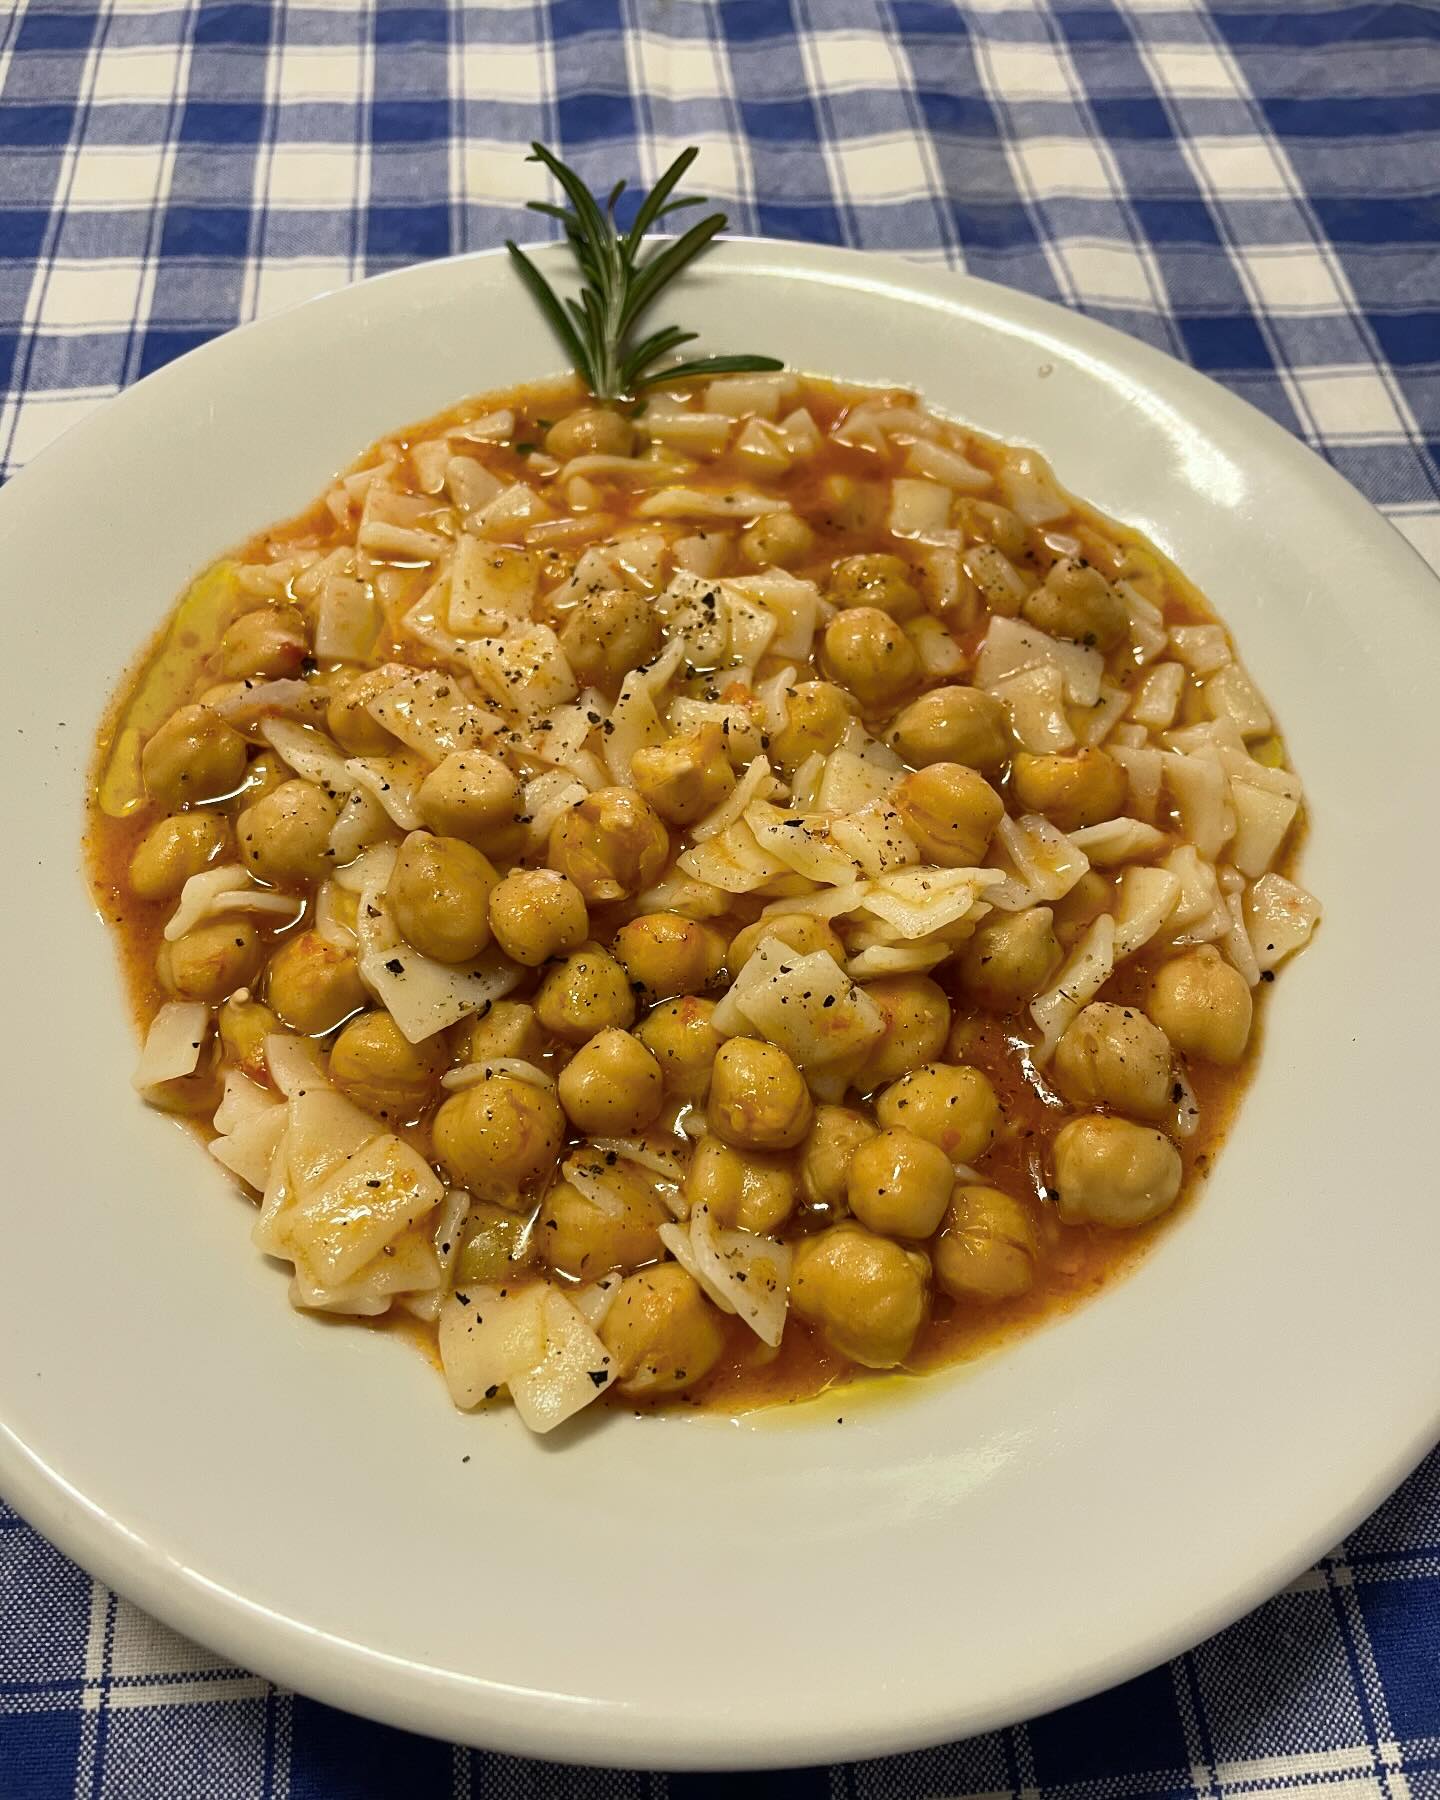 Maltagliati senza uovo in zuppa di ceci bio #slowfood #zuppe #cucinaitaliana